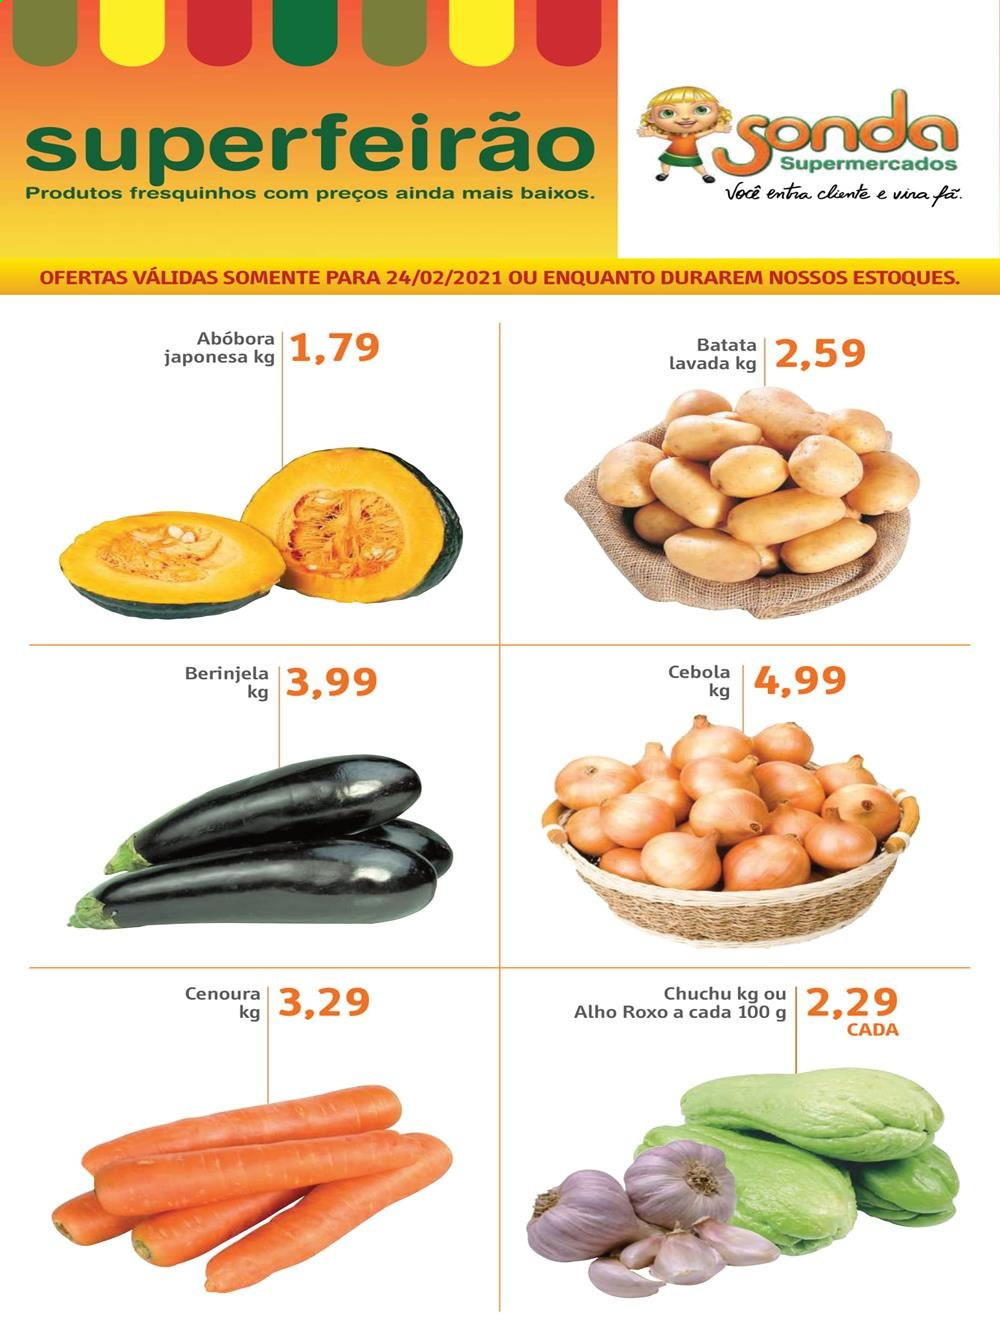 thumbnail - Folheto Sonda Supermercados - 24/02/2021 - 24/02/2021 - Produtos em promoção - chuchu, batata, abóbora, alho, cebola, cenoura. Página 1.